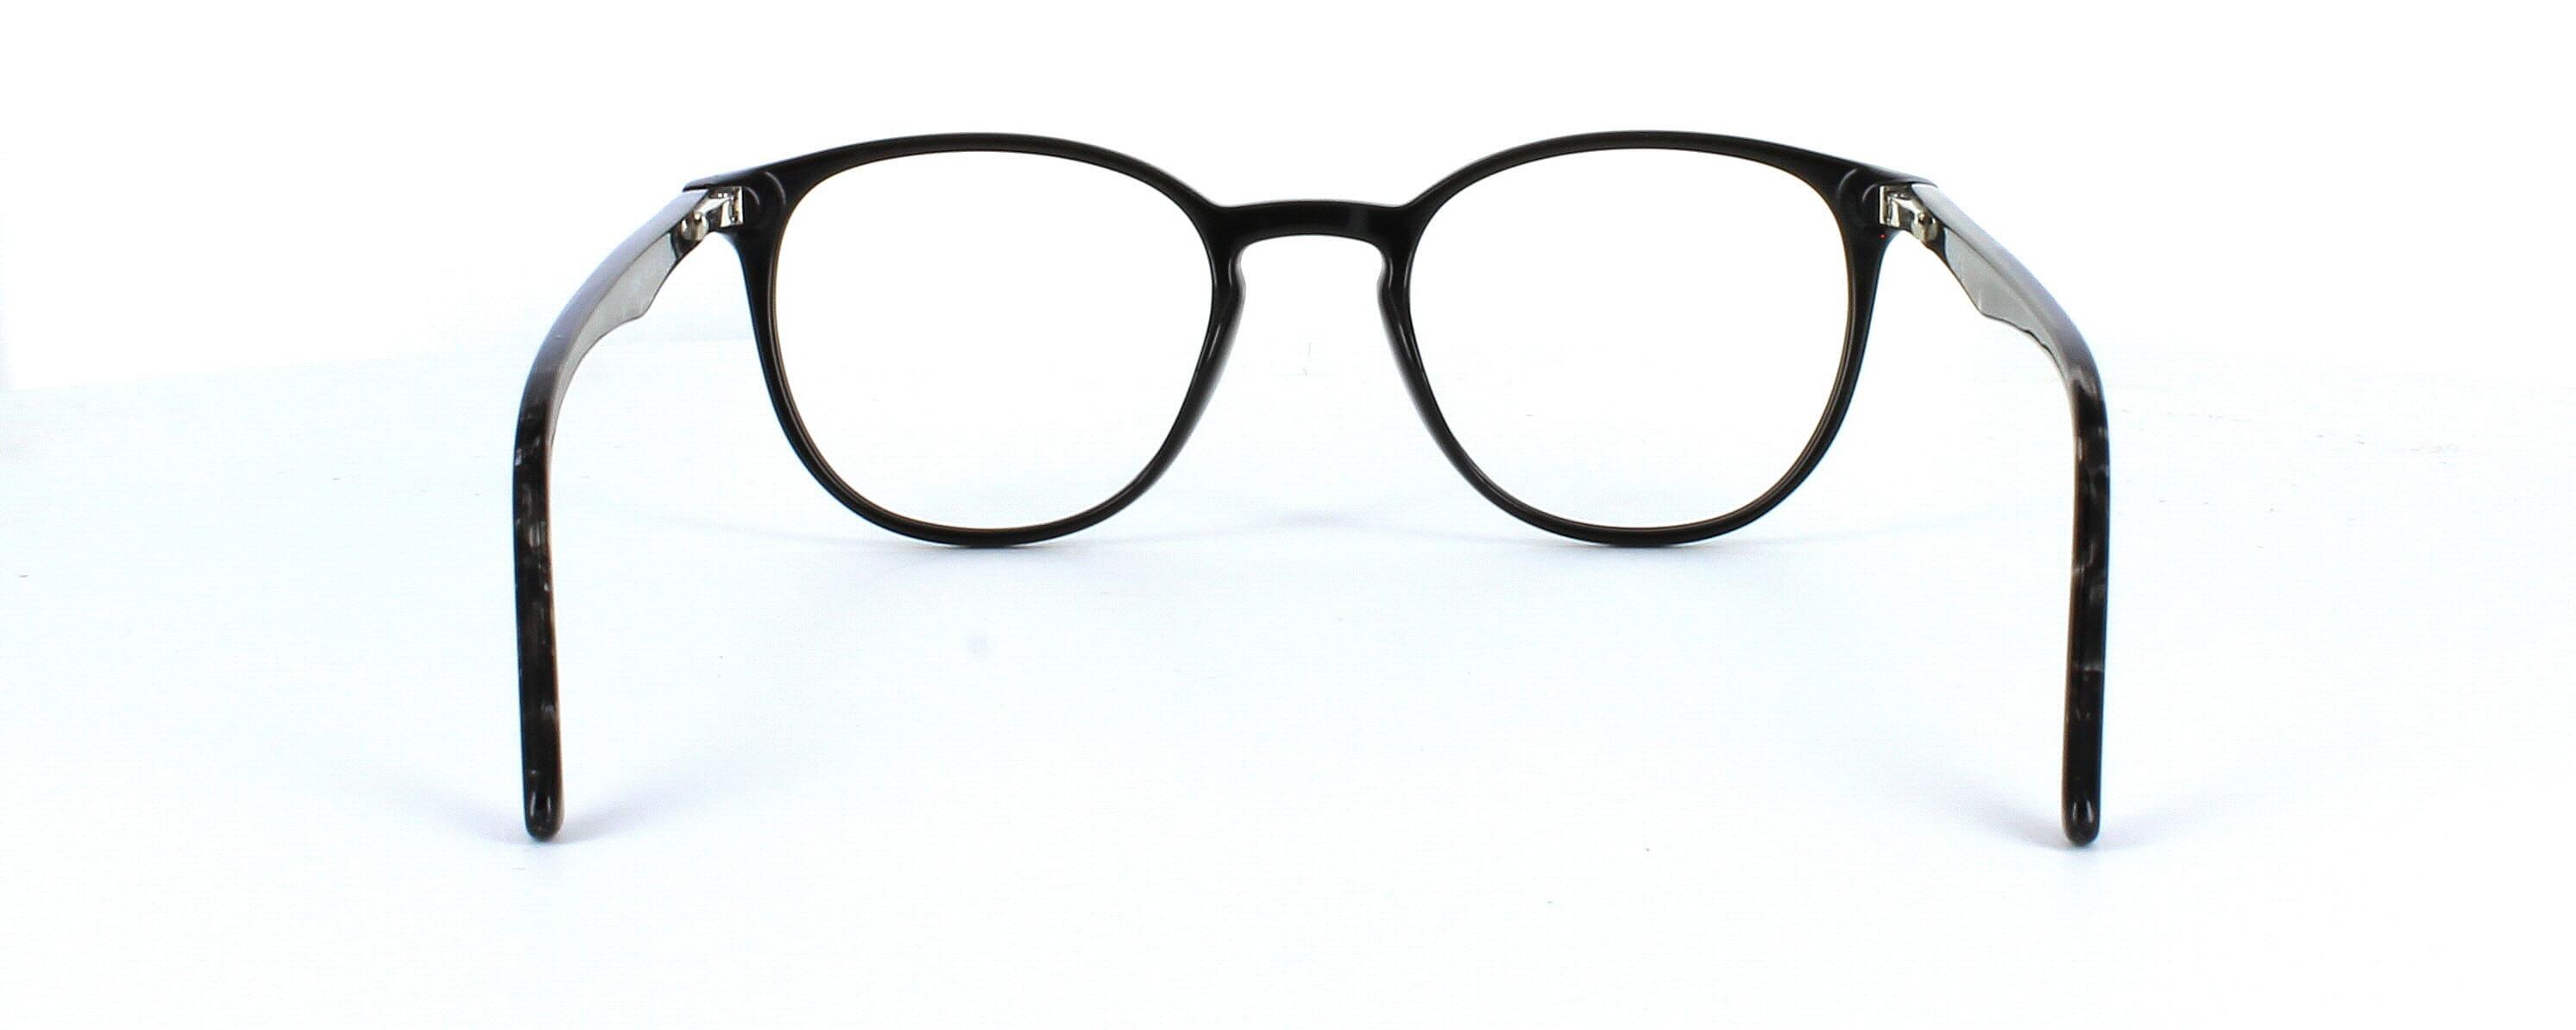 Canis - shiny black plastic round shaped glasses frame - image 4